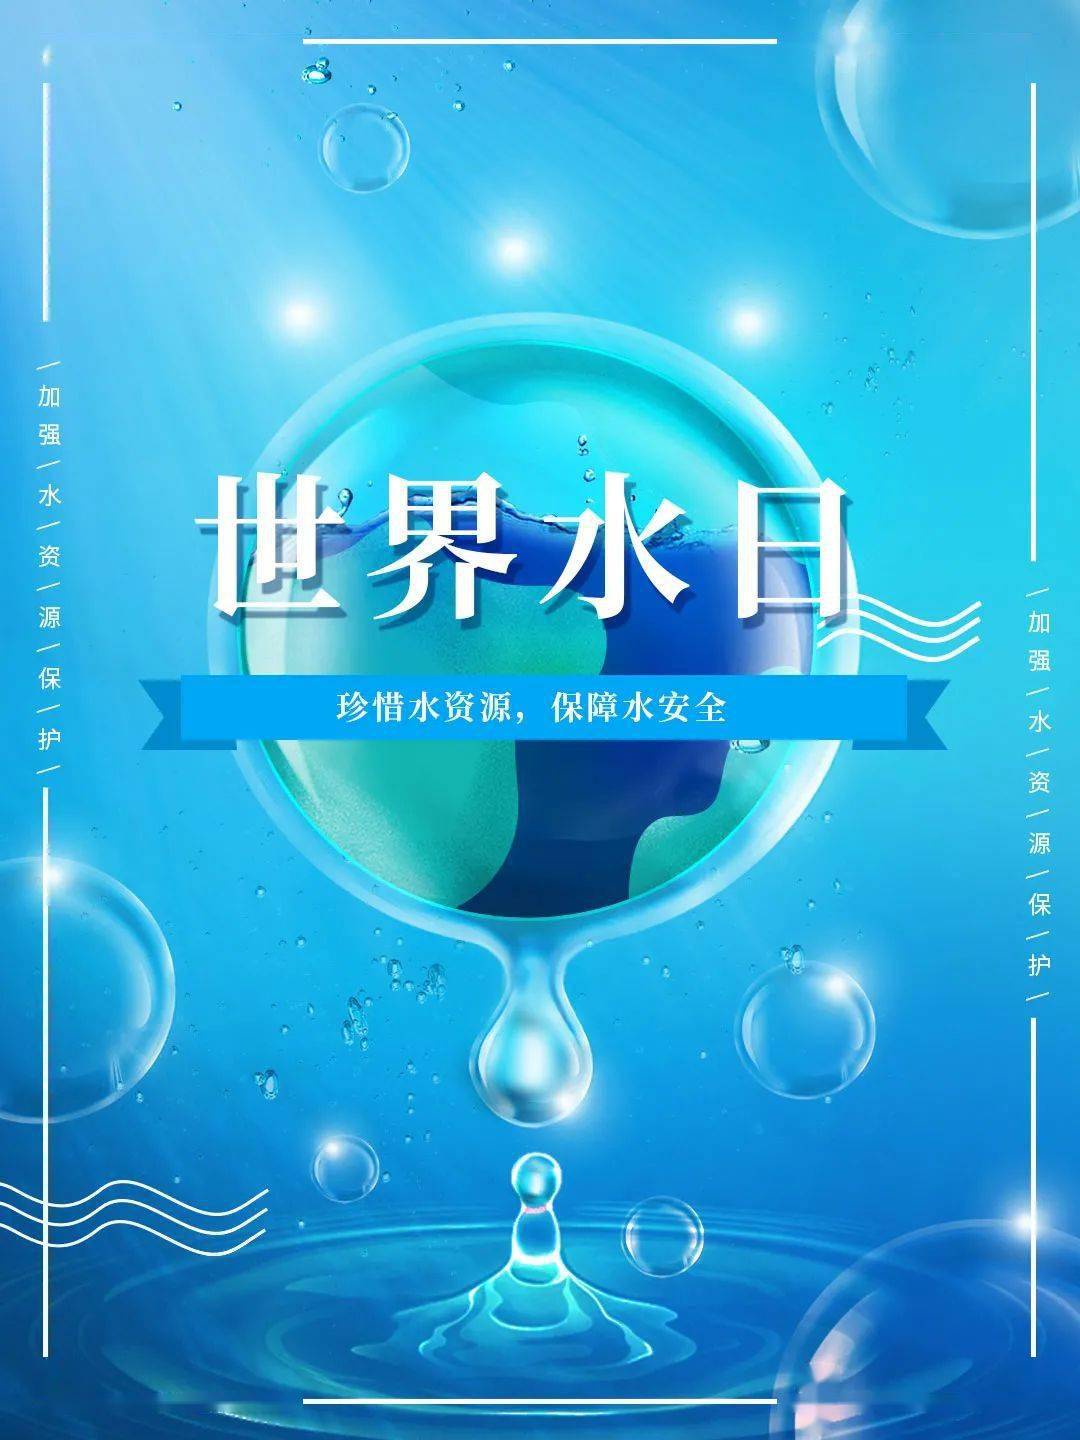 2021年"世界水日""中国水周"主题口号学起来